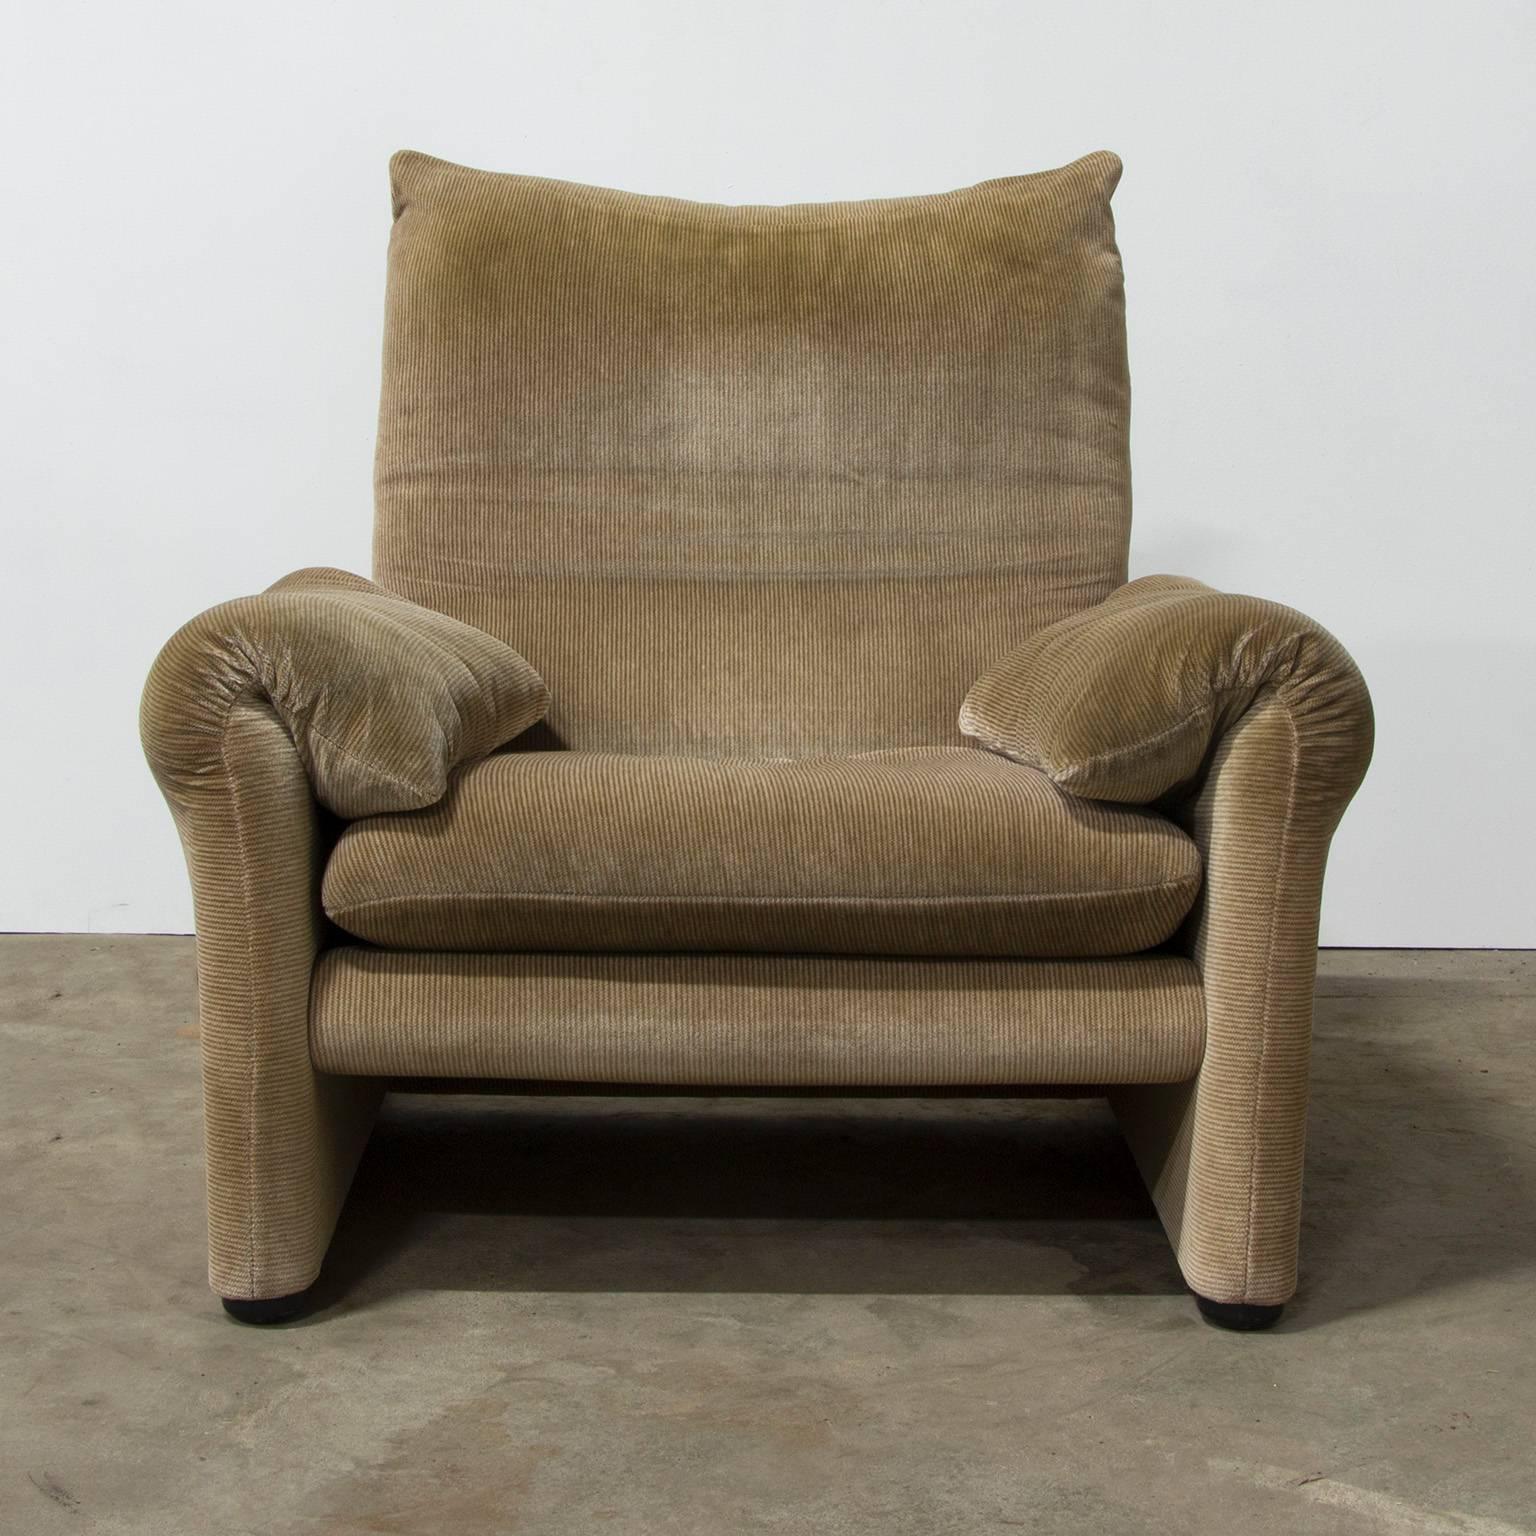 1973, Vico Magistretti for Cassina, Maralunga Chair in Original Fabric 1